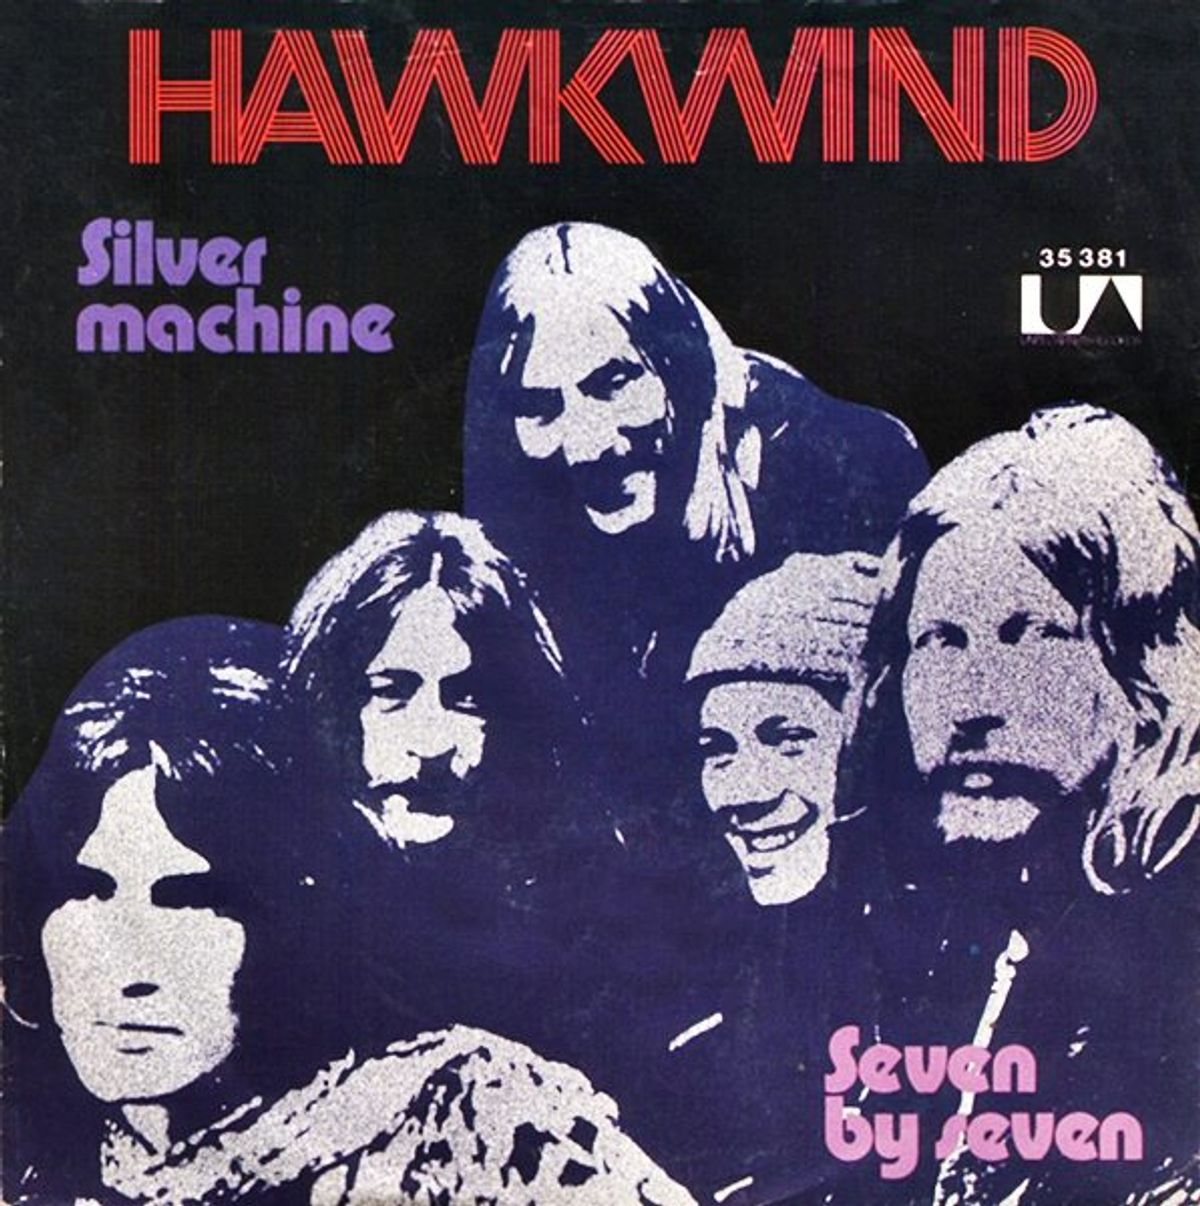 #RockNFiets - Hawkwind - Silver Machine (1972)